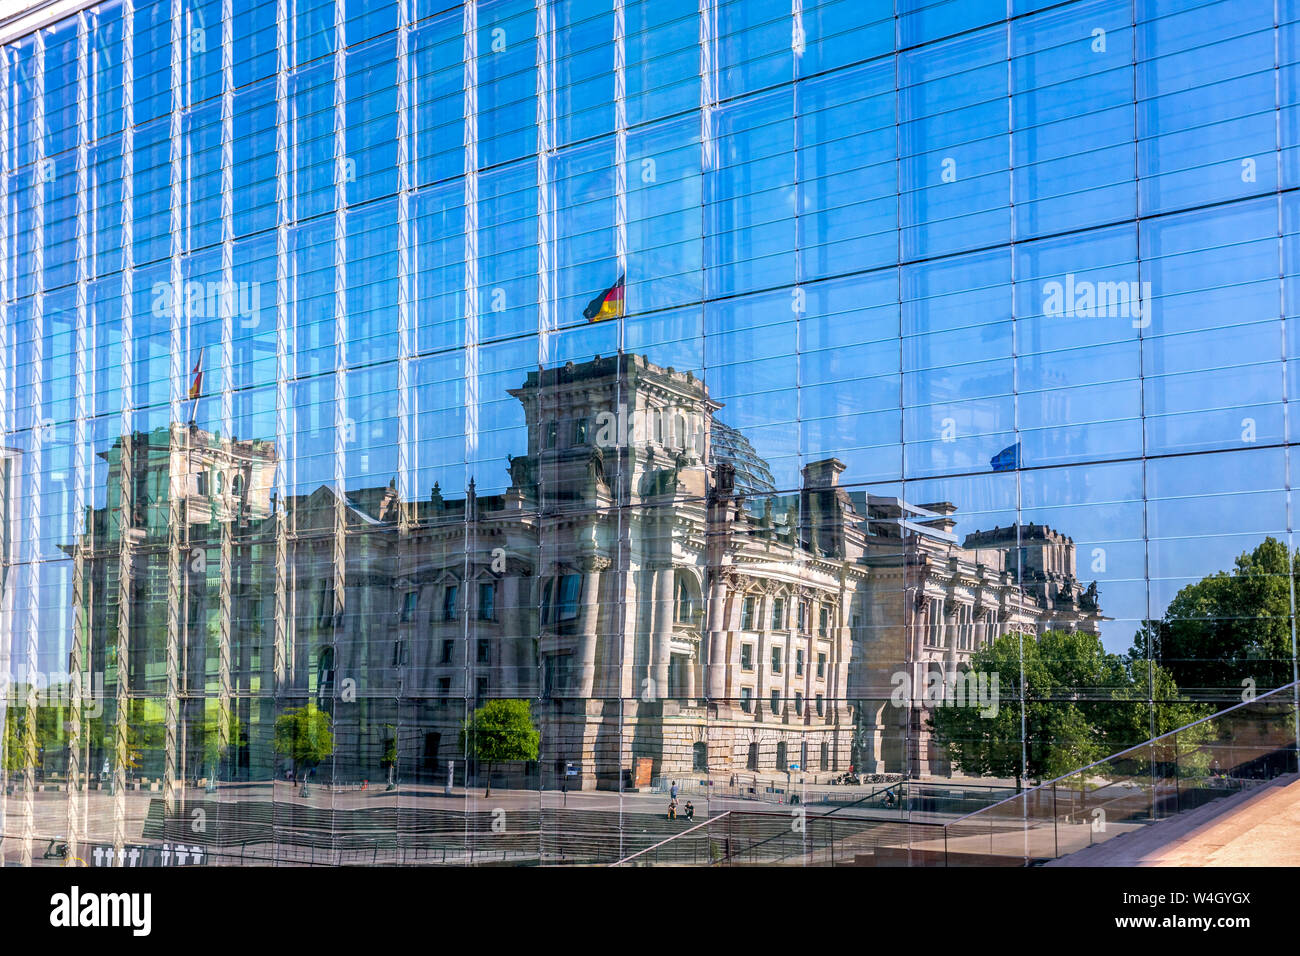 Alemania, Berlín, el edificio del Reichstag (Parlamento) reflejado en la fachada de vidrio de Marie-Elisabeth-Lueders-Building Foto de stock